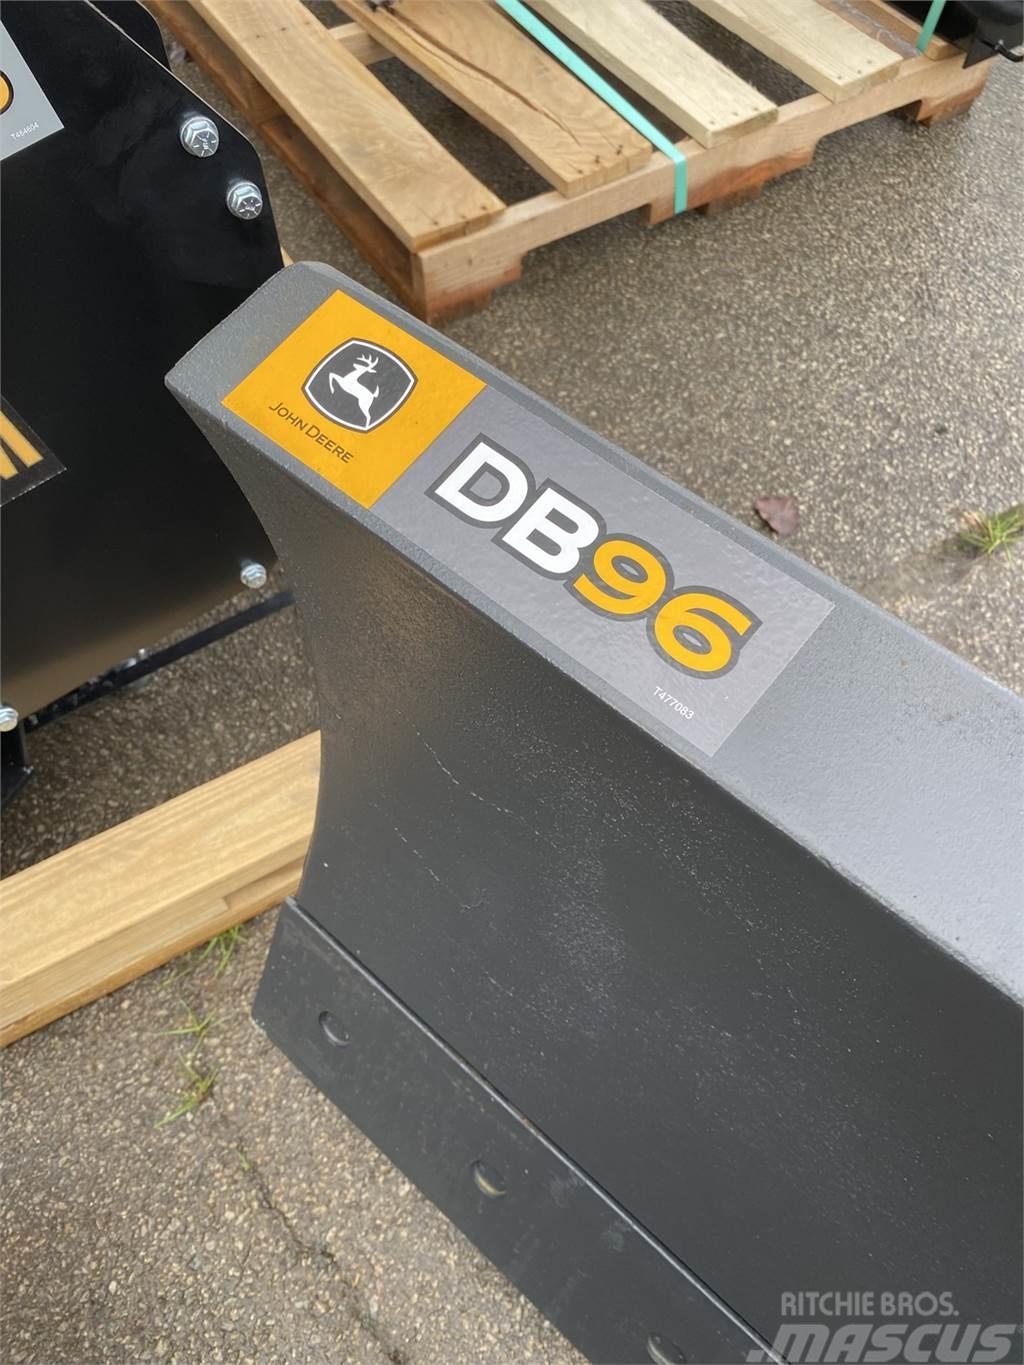 John Deere DB96 Pozostały sprzęt budowlany